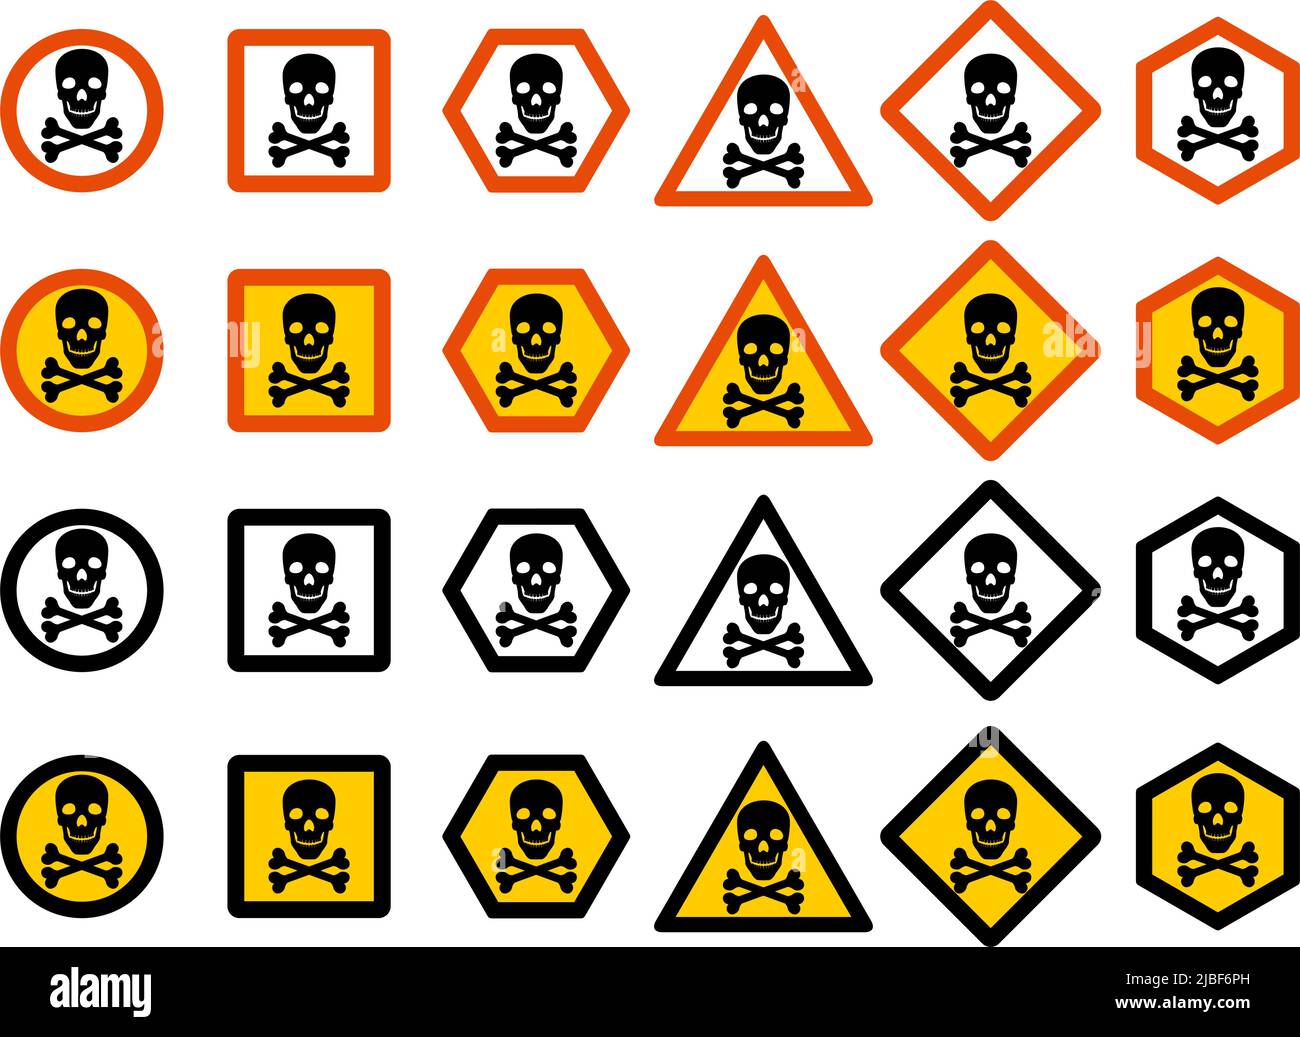 Gefährliches Konzept. Eine Reihe von verschiedenen Anzeichen für chemische, radioaktive, toxische, giftige und gefährliche Substanzen. Vektorgrafik Stock Vektor